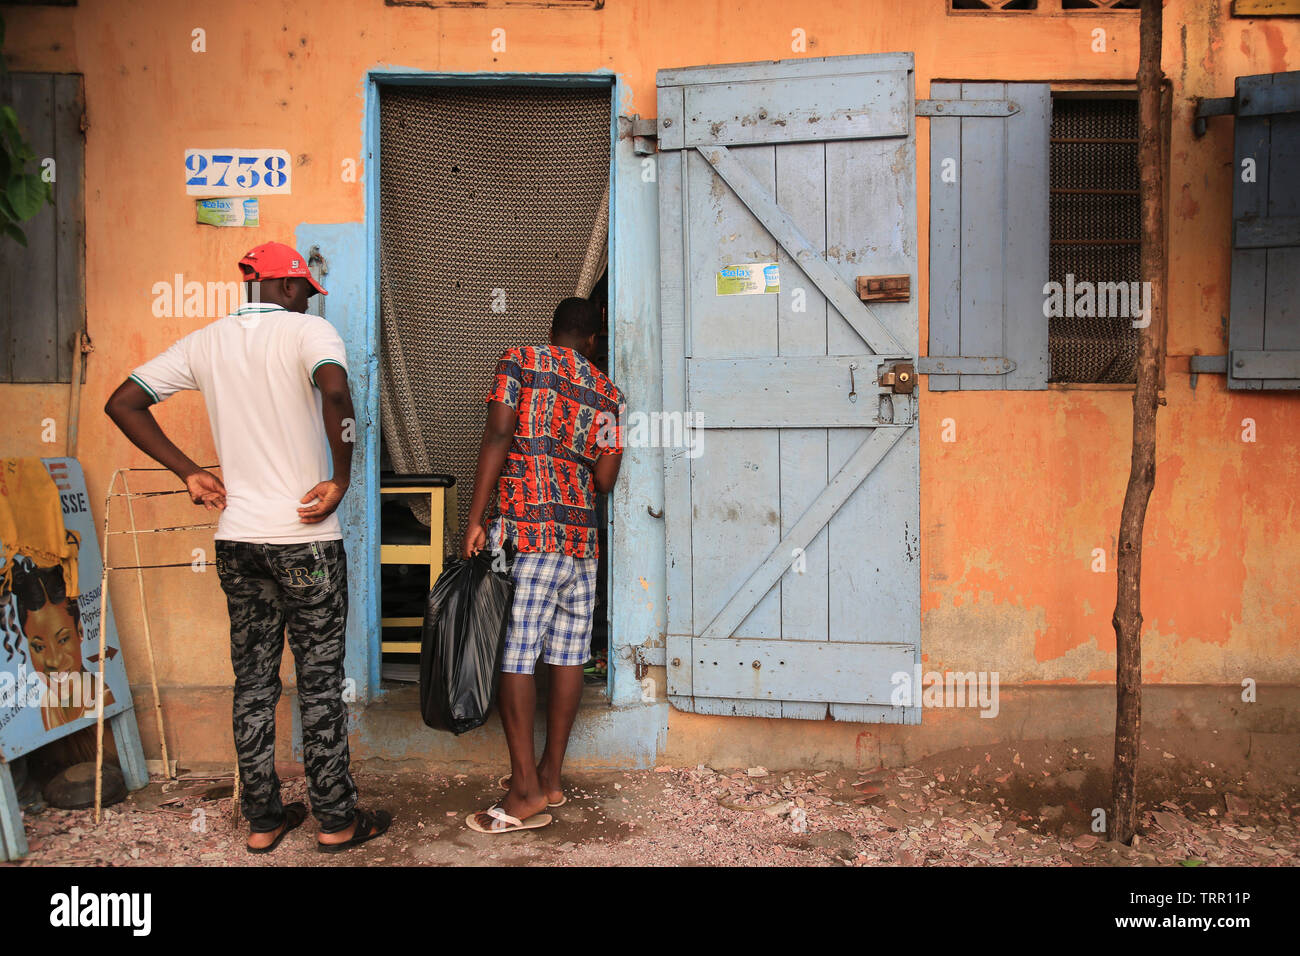 Salon de coiffure. Lomé. Togo. Afrique de l'Ouest. Foto de stock